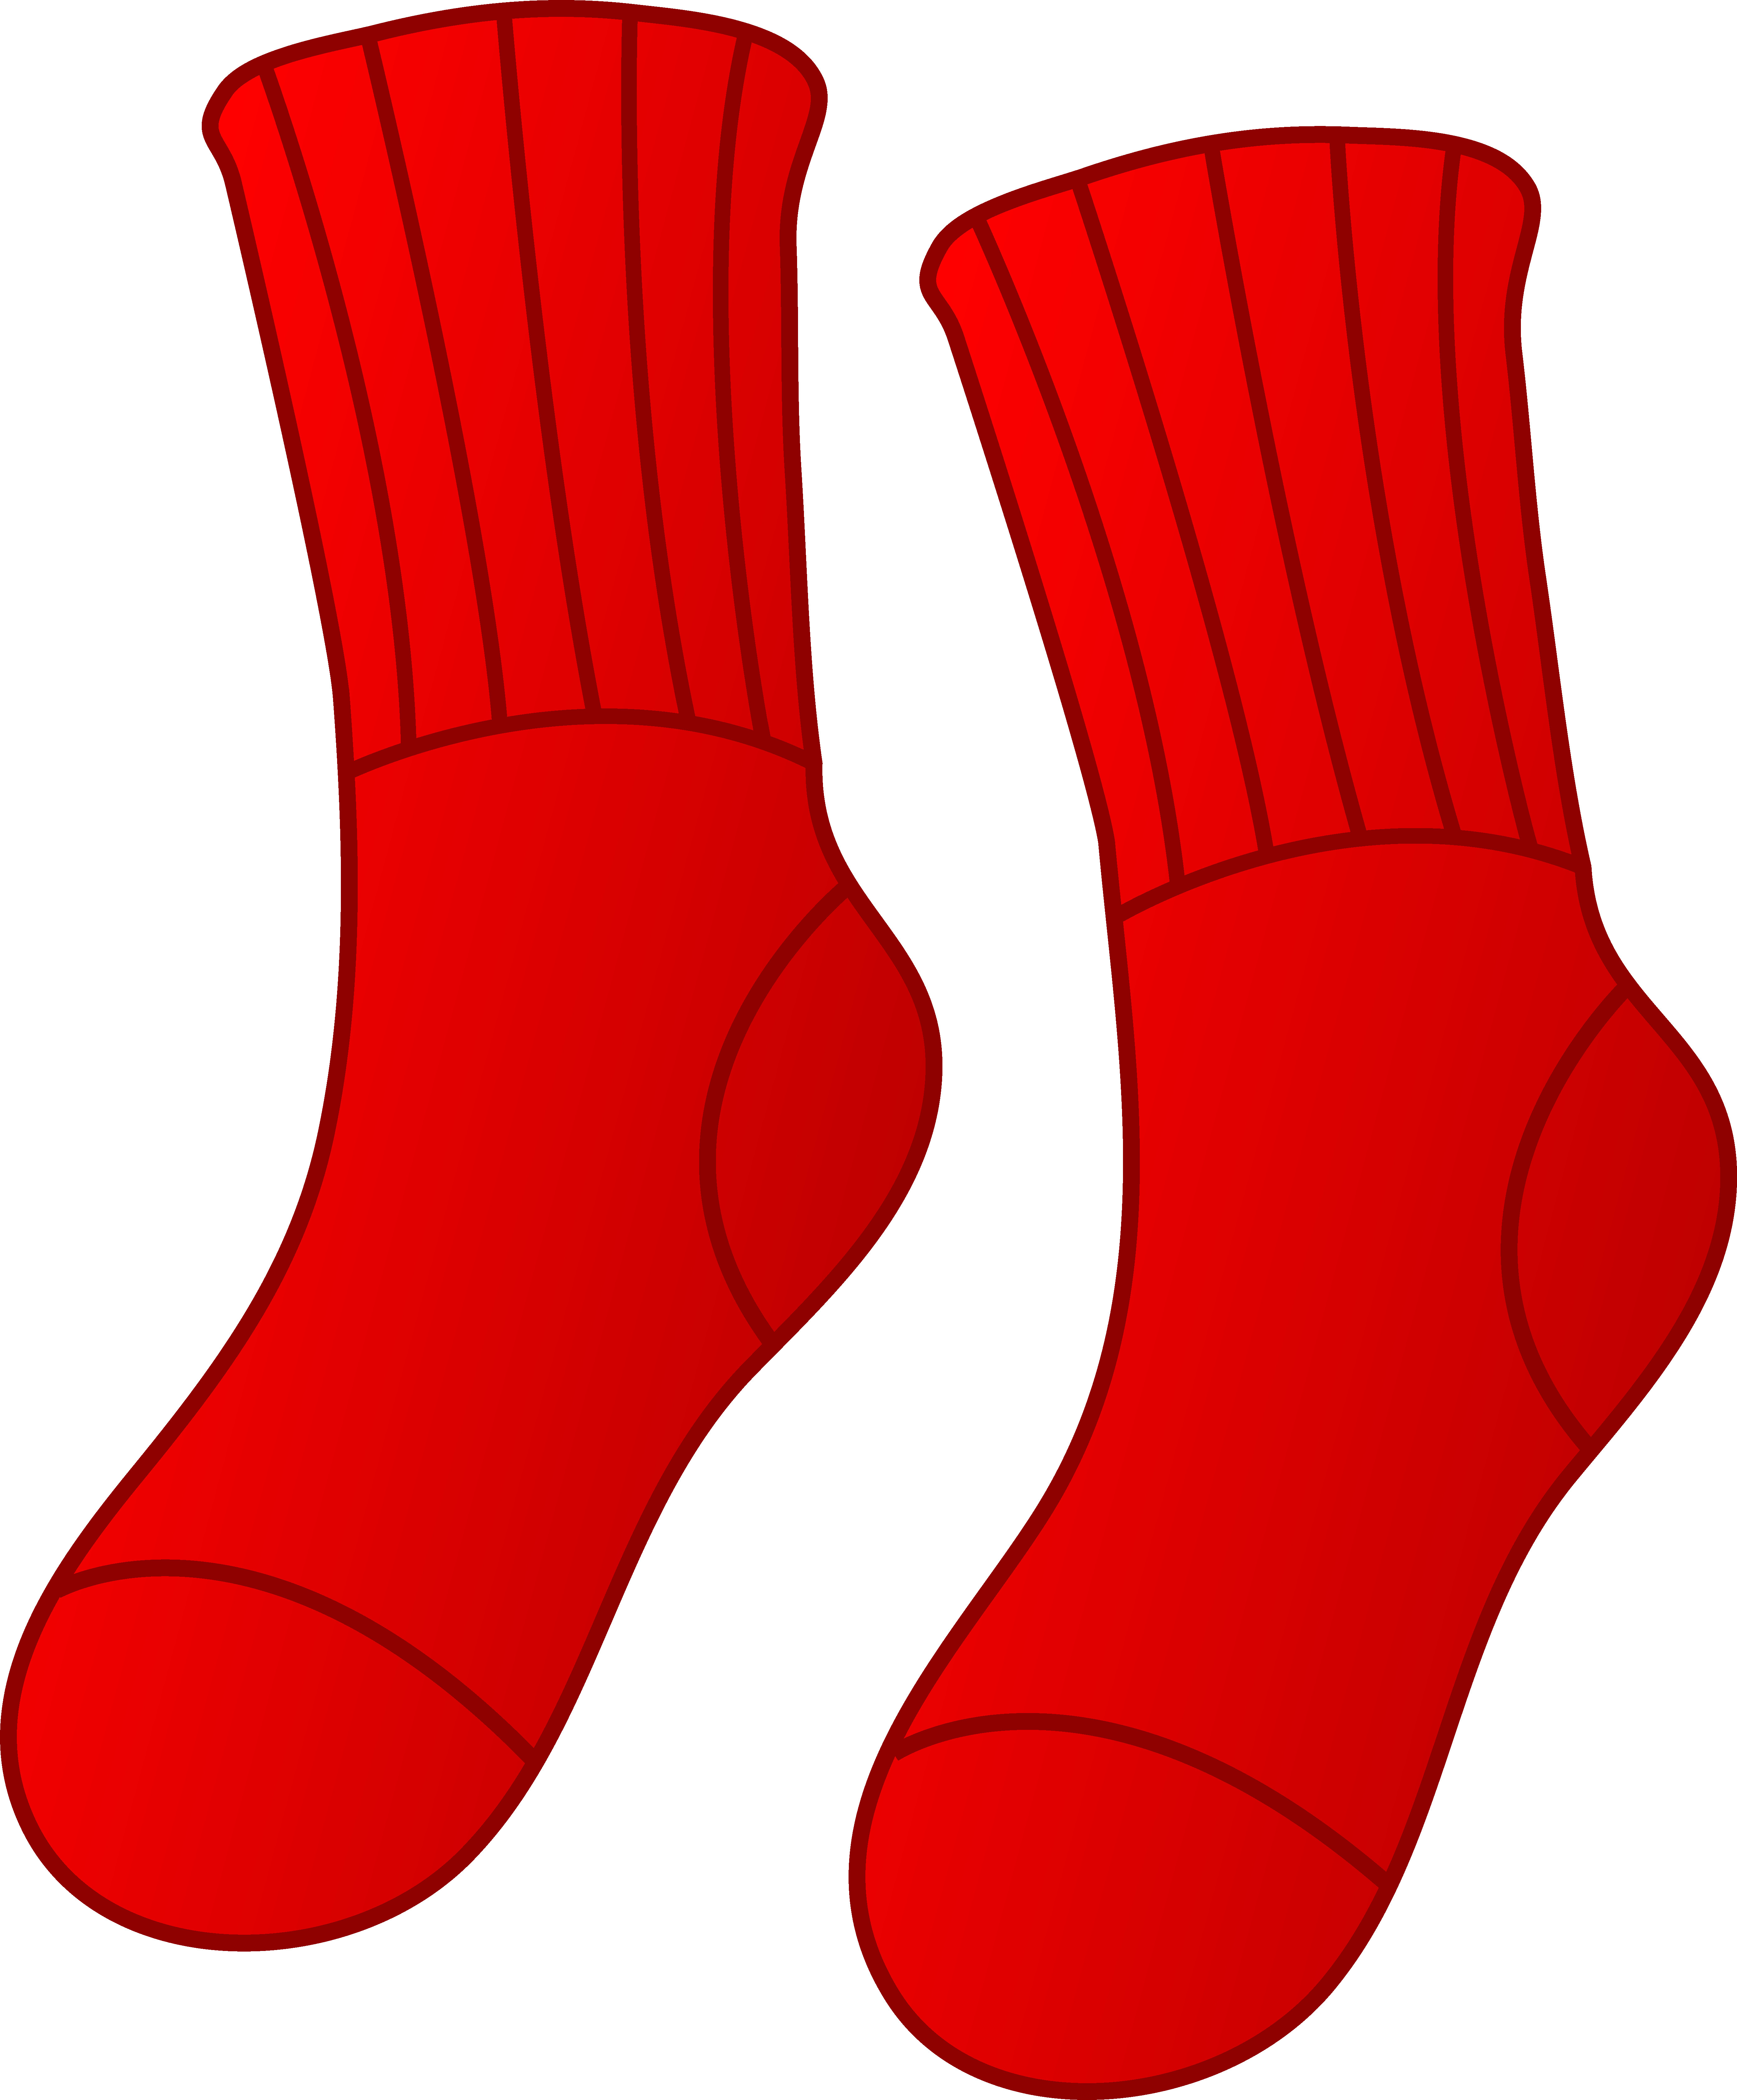 Red socks clip art - ClipartFox